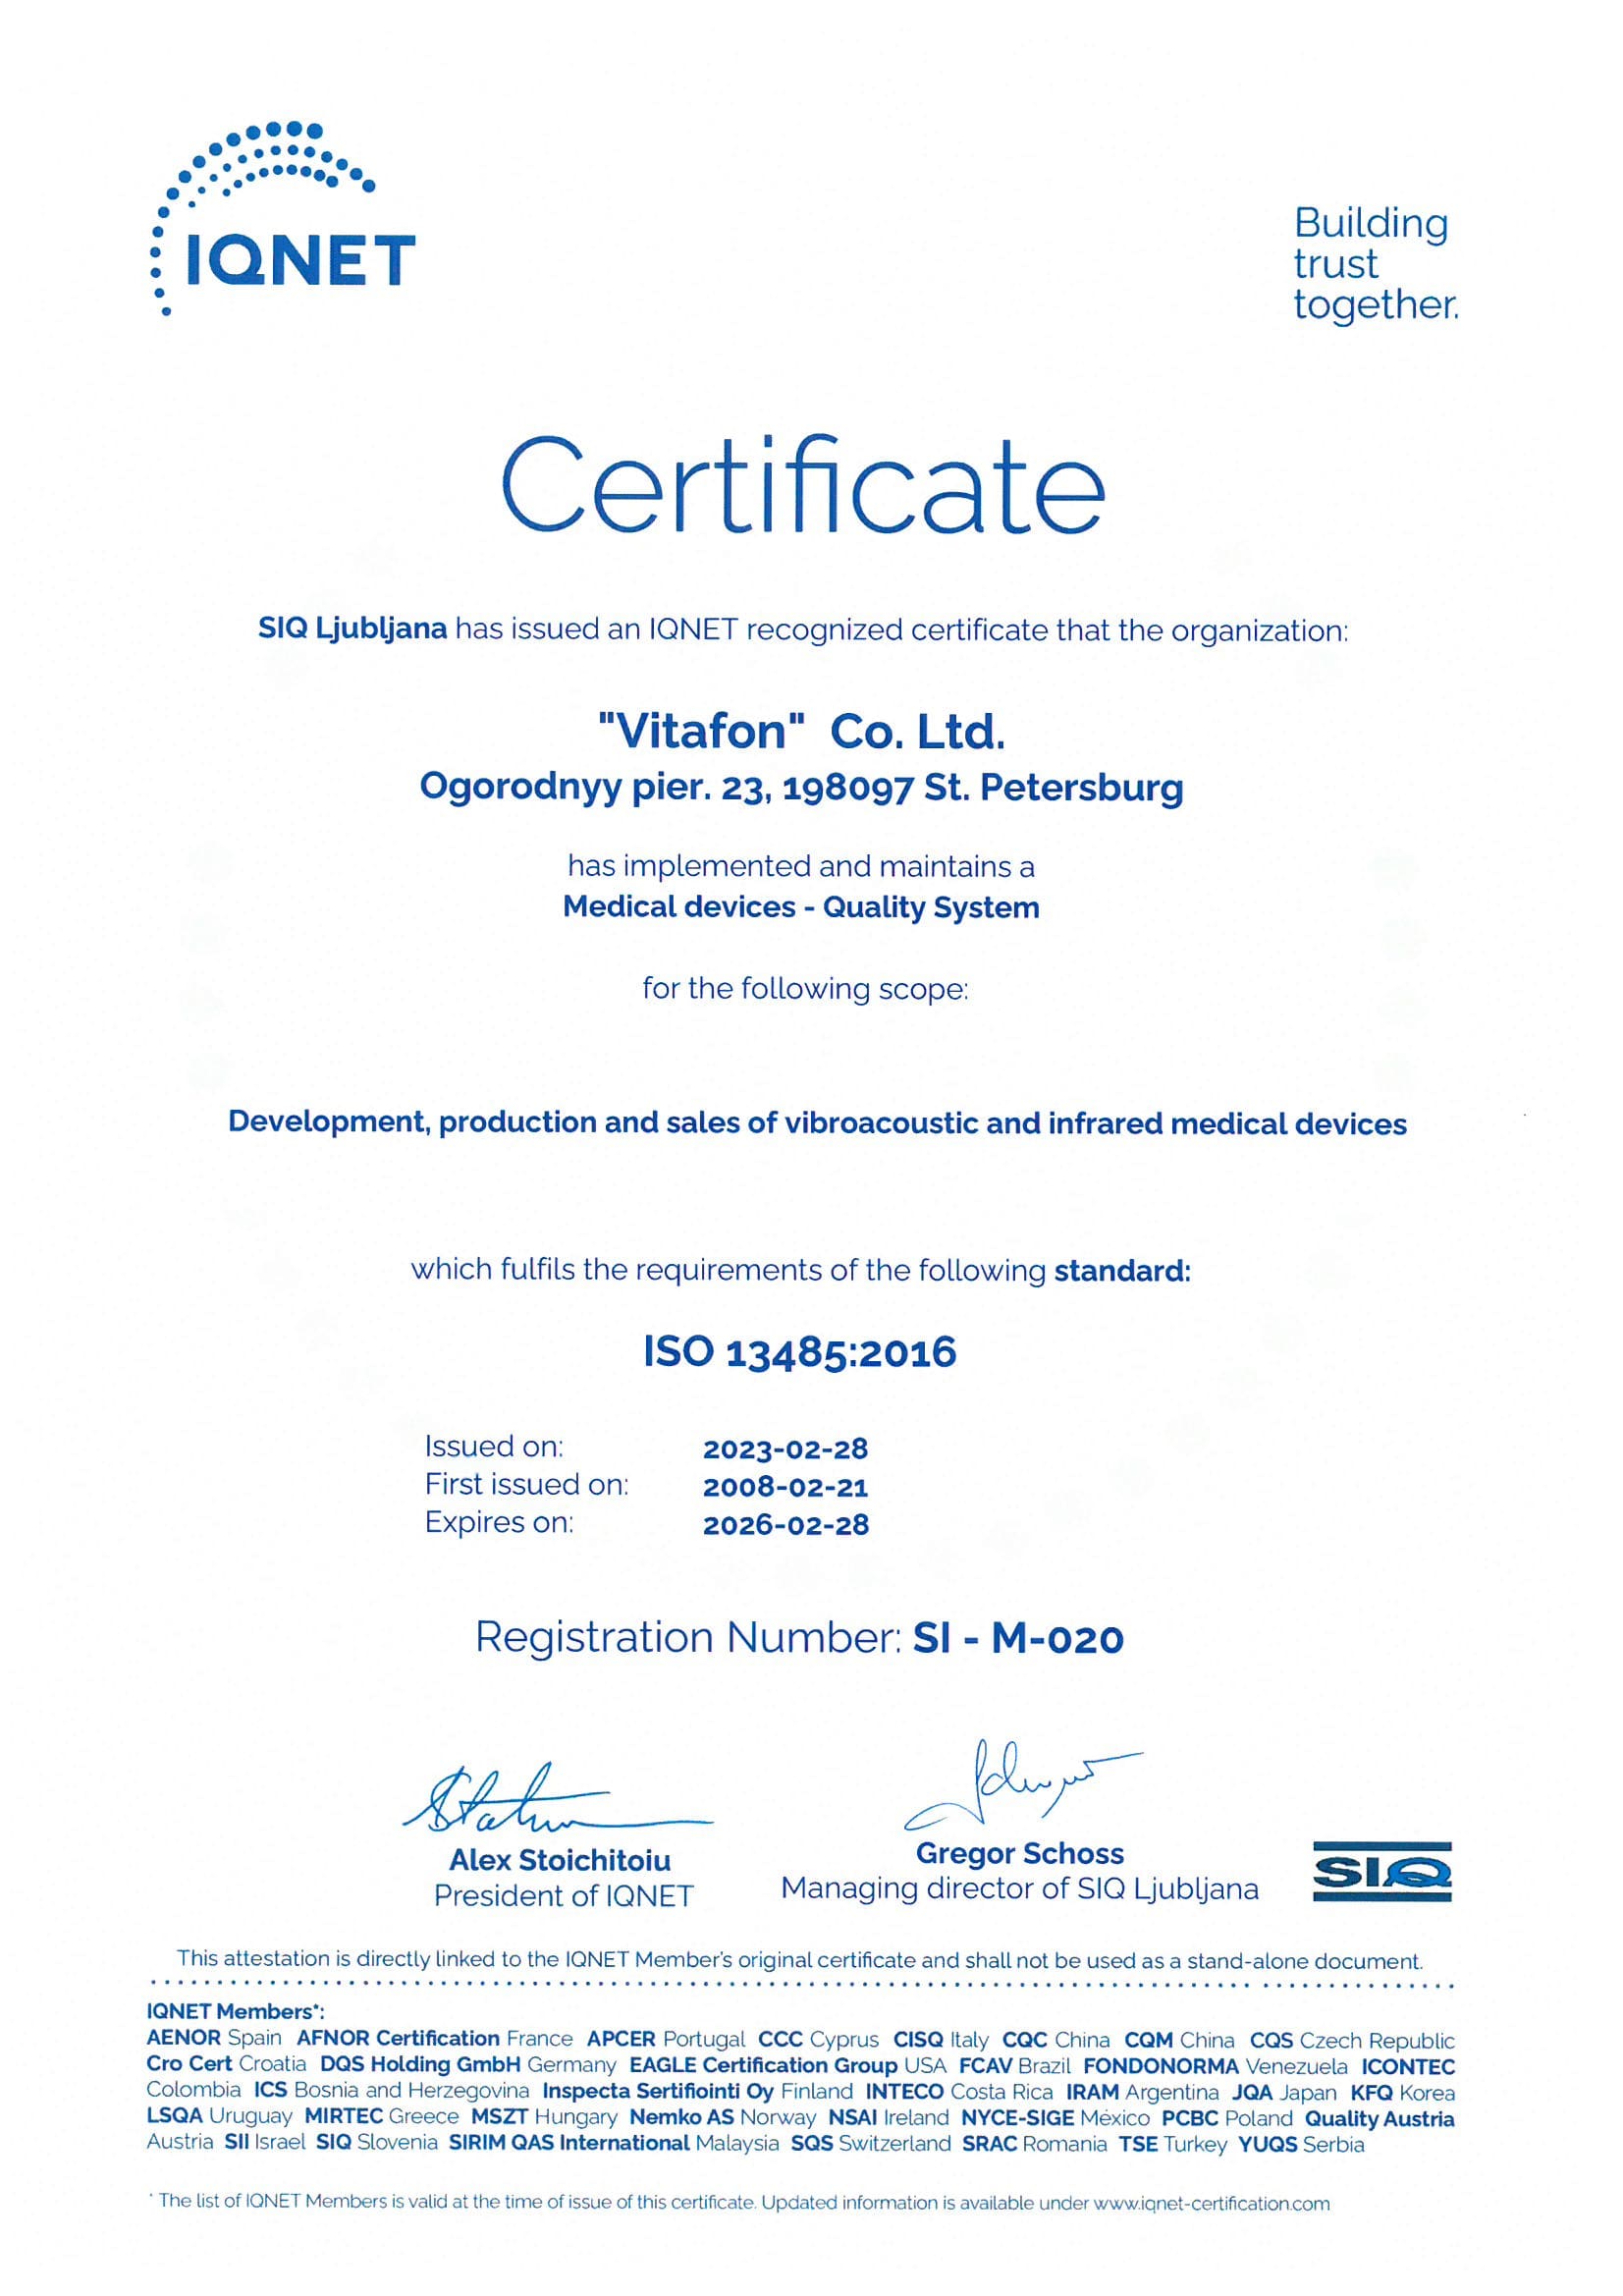 Европейский сертификат о соответствии системы менеджмента качества стандарту ISO 13485:2003